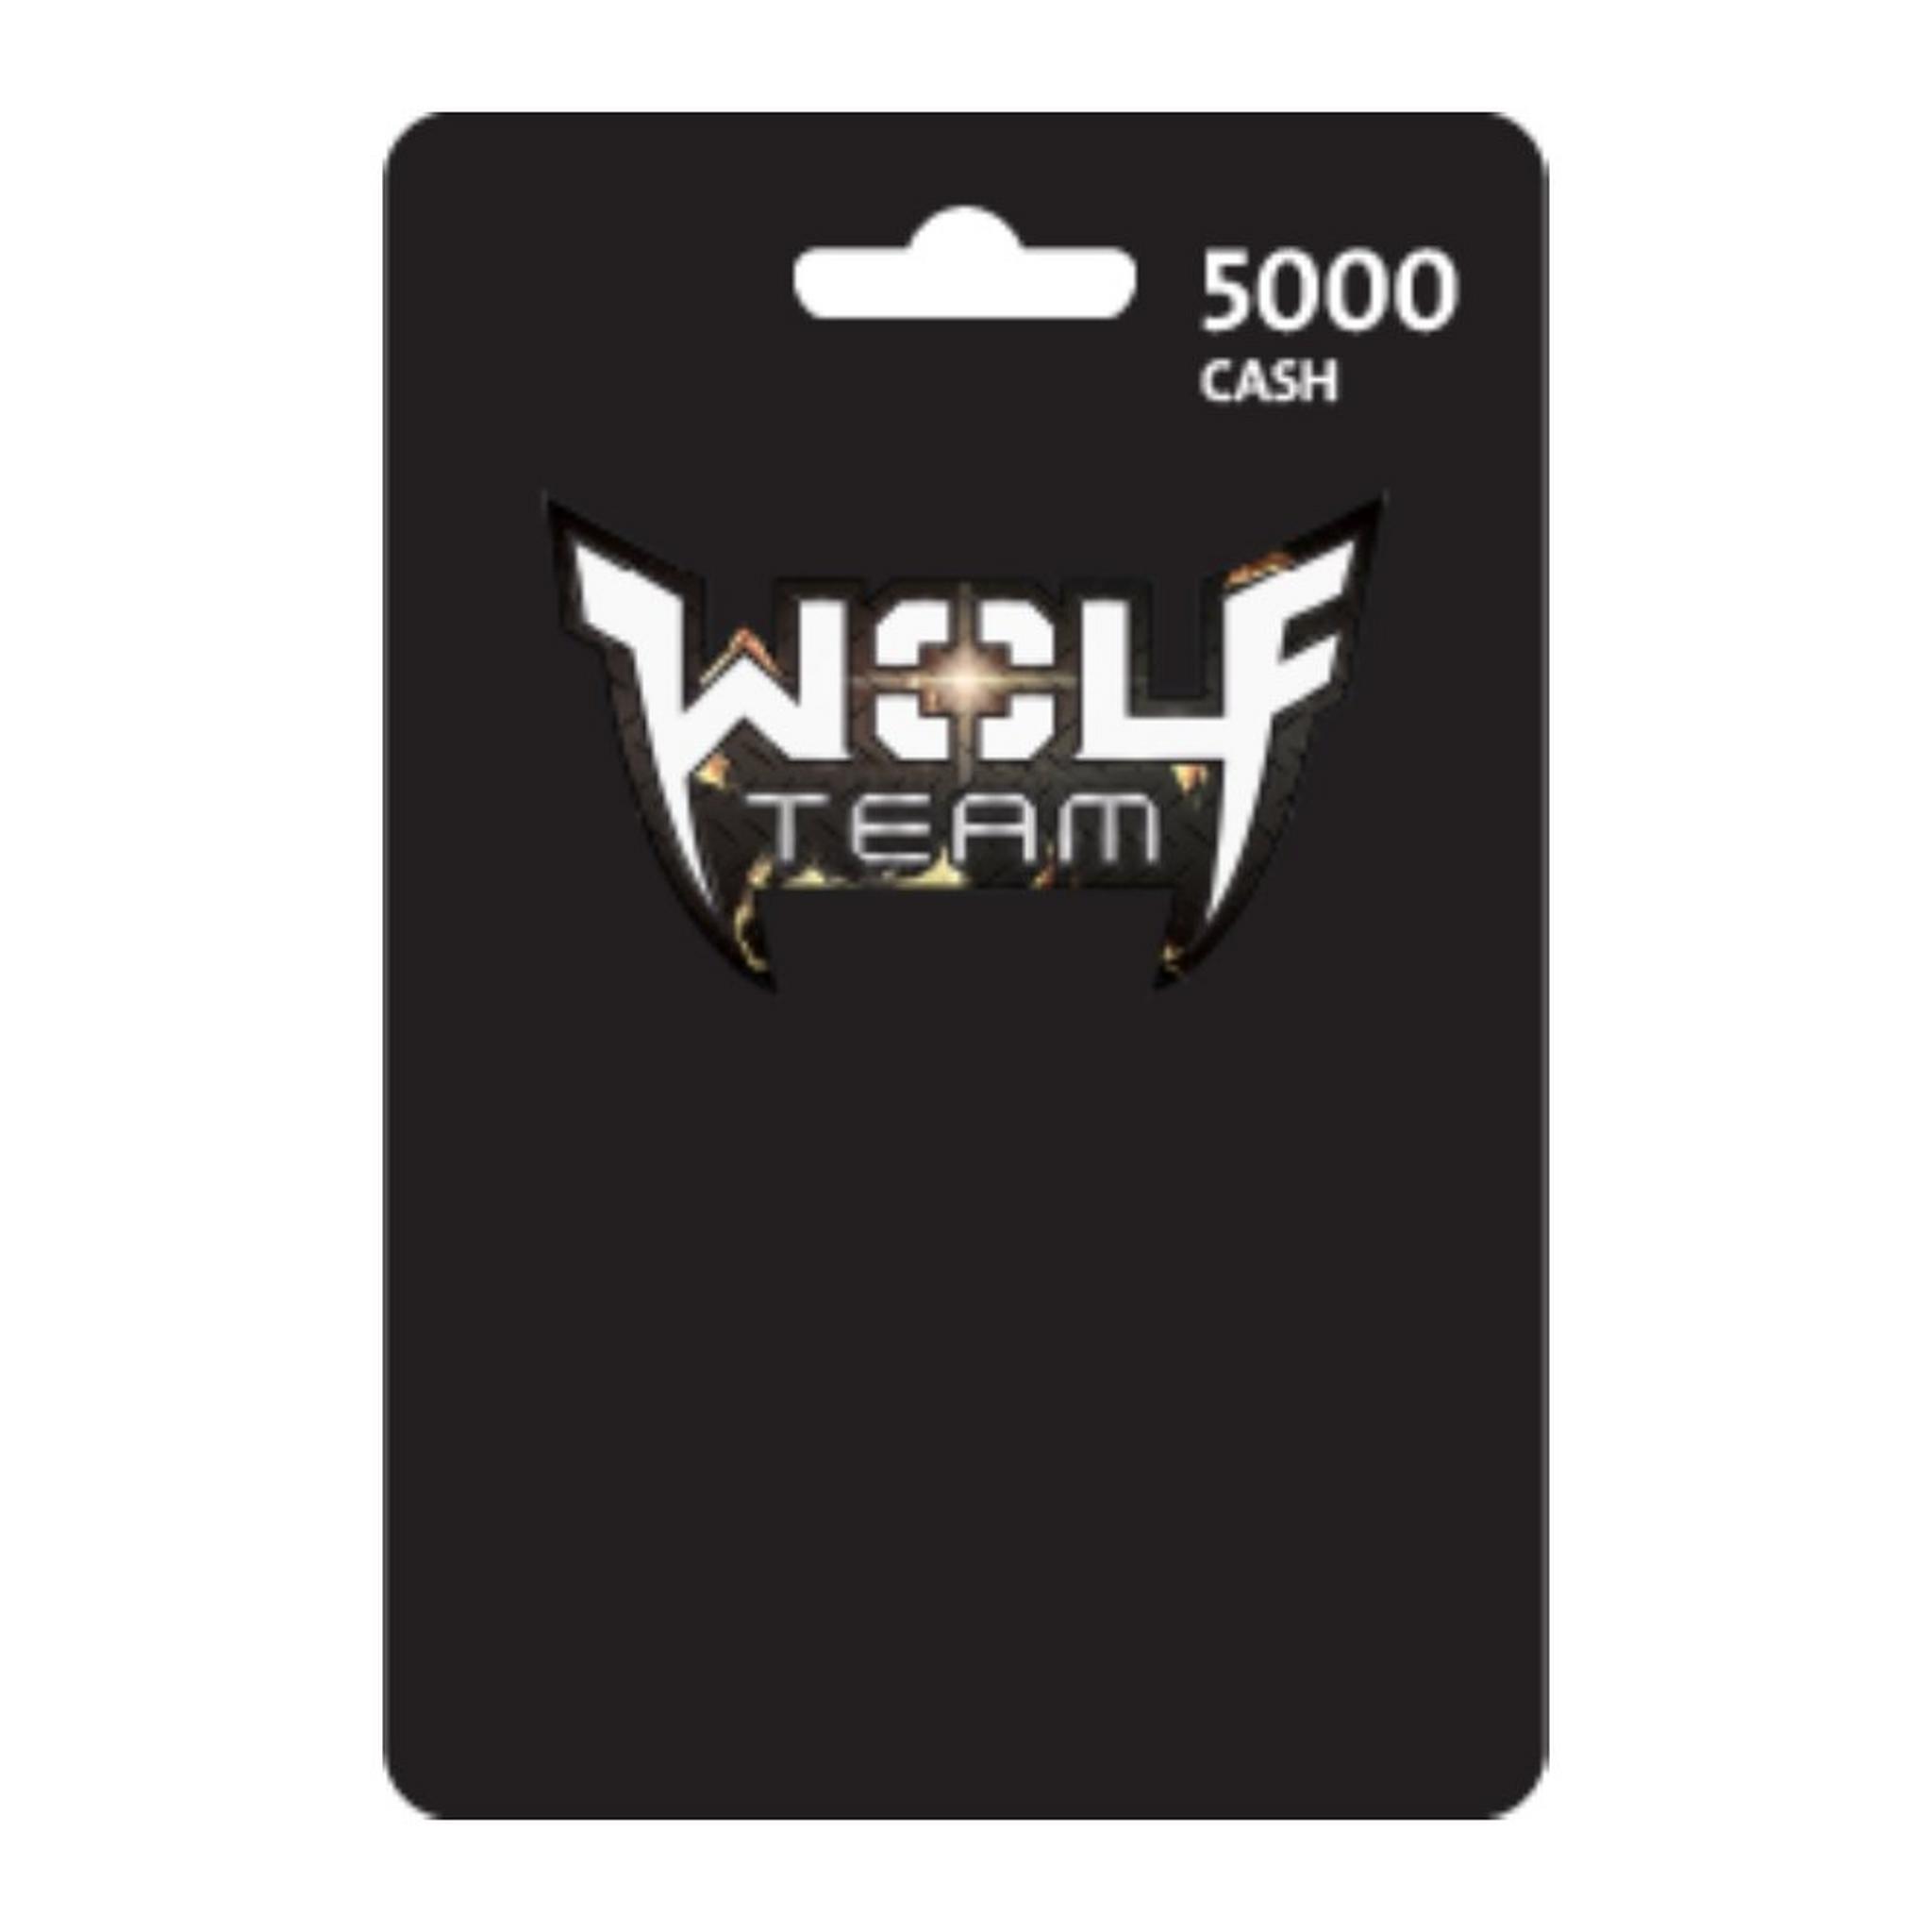 Wolfteam Mena 5000 Cash